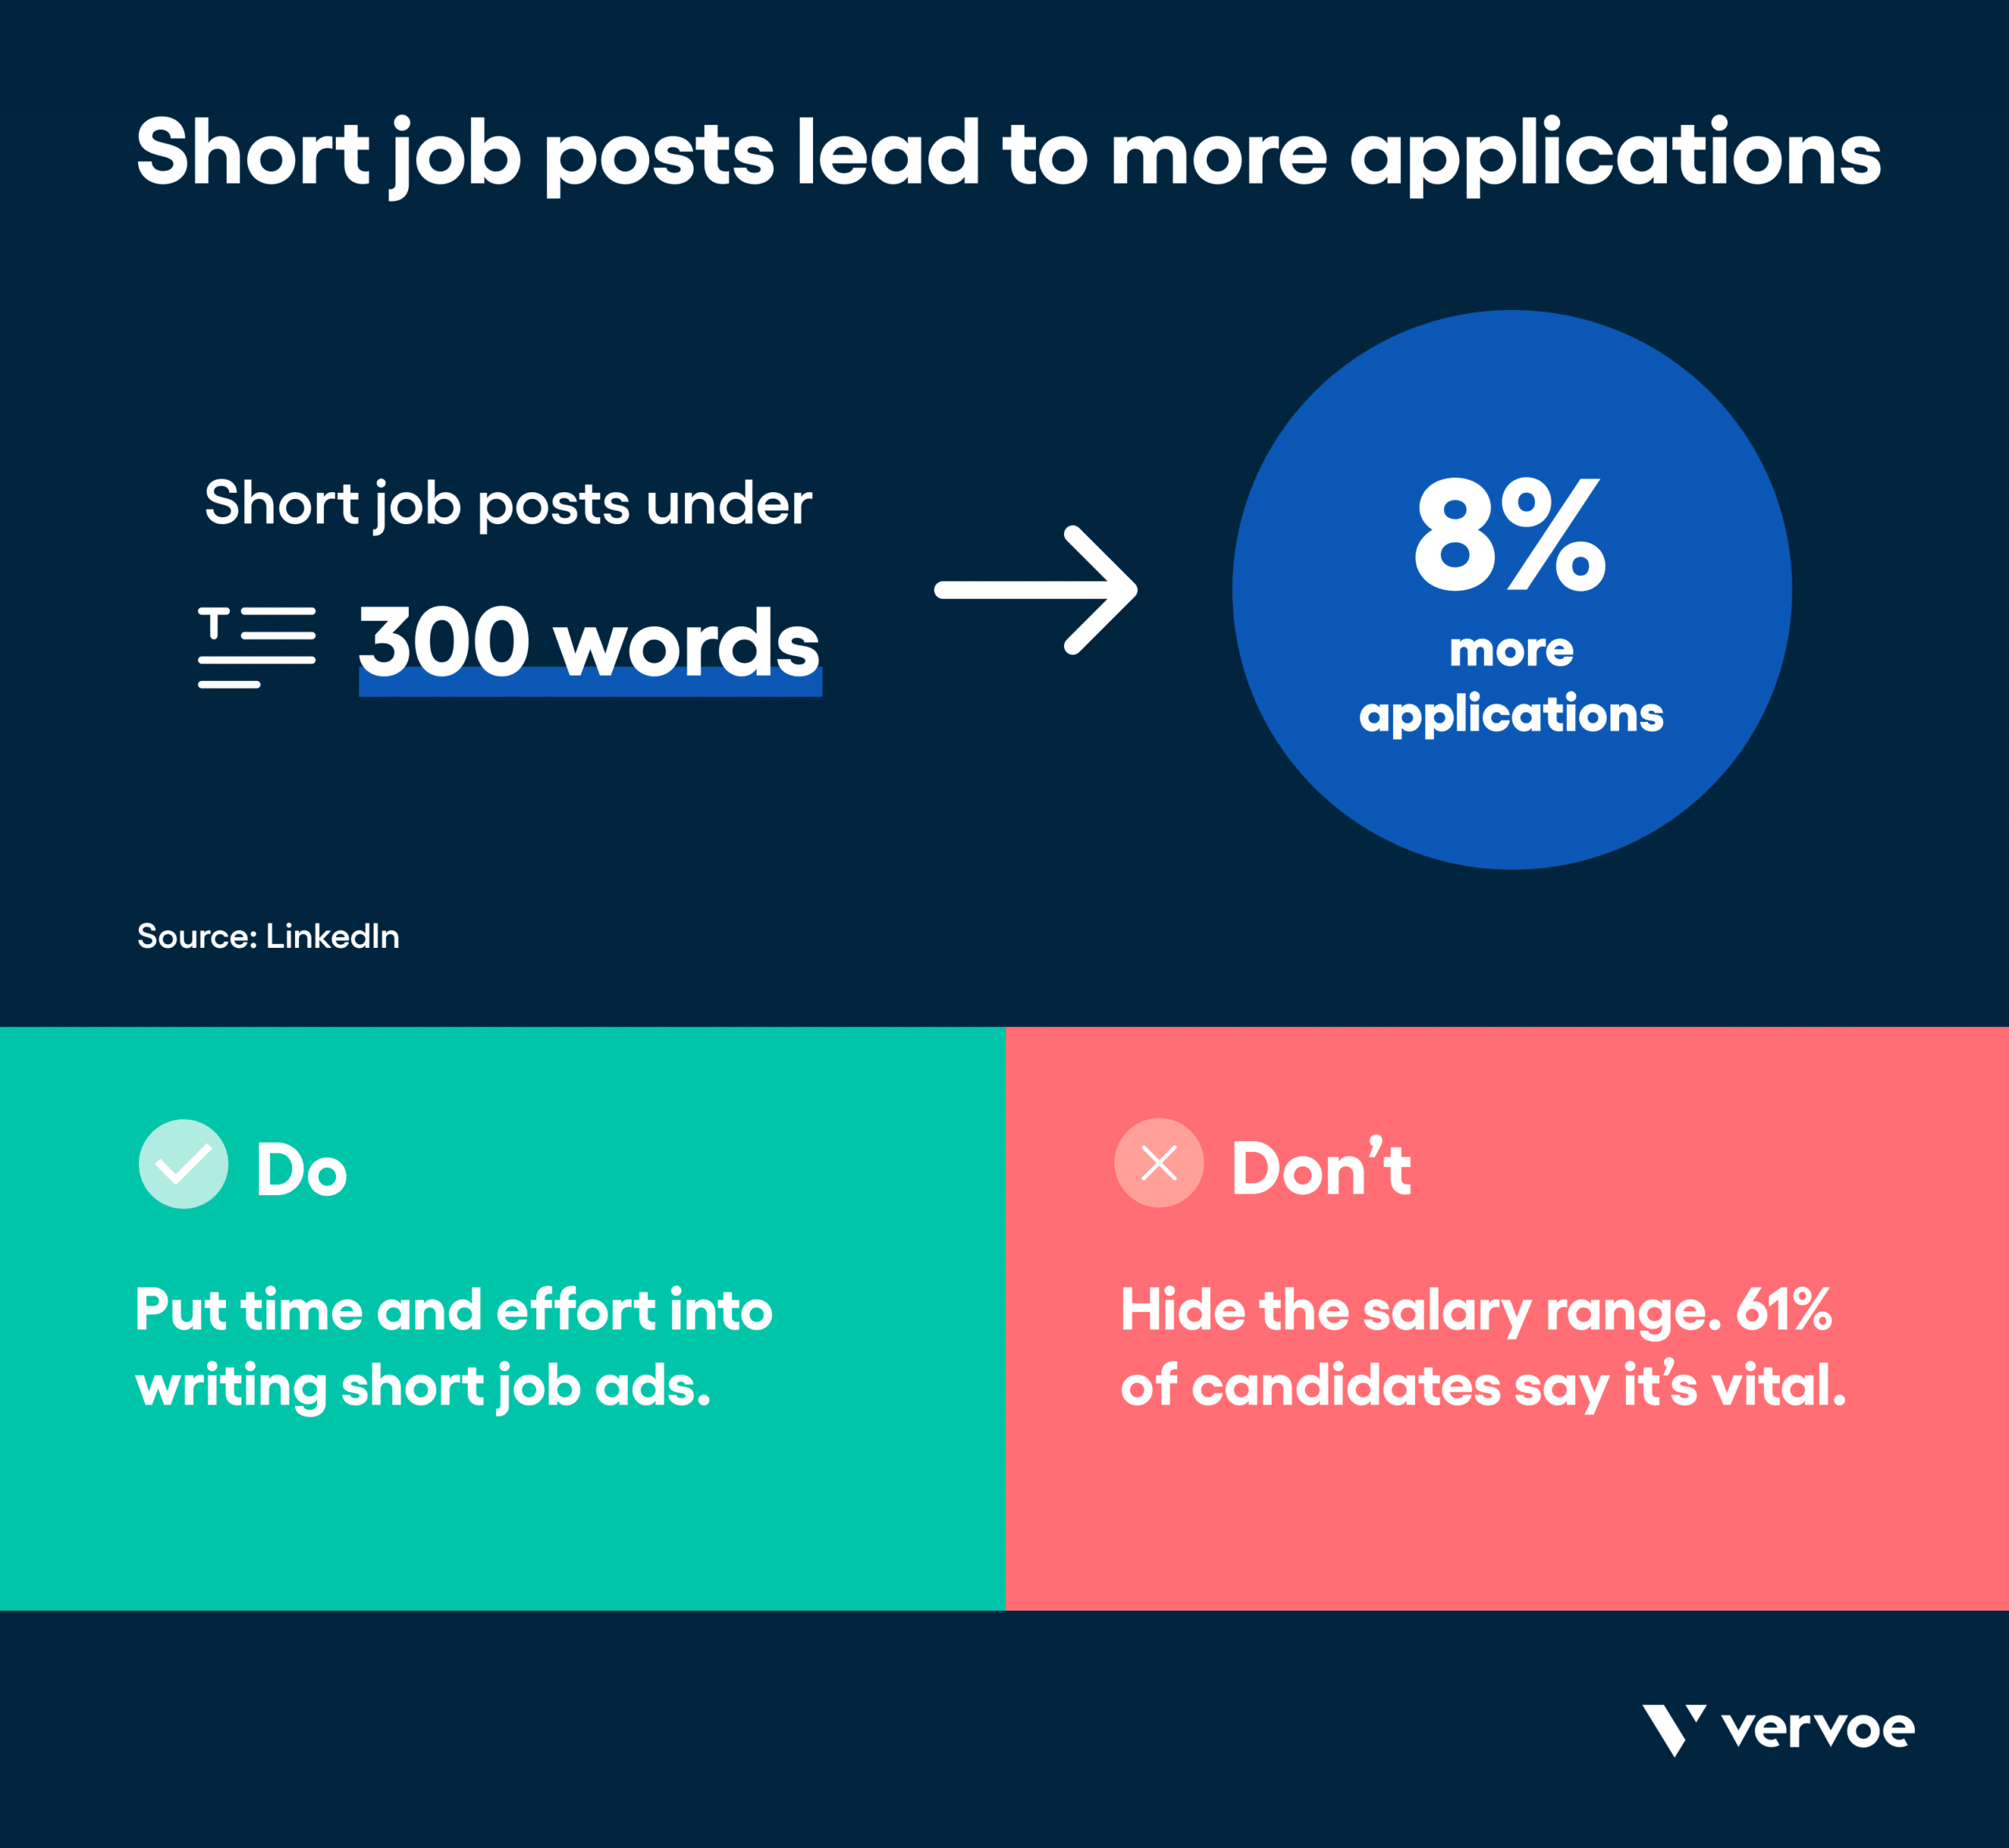 信息图显示短职位导致更多的申请